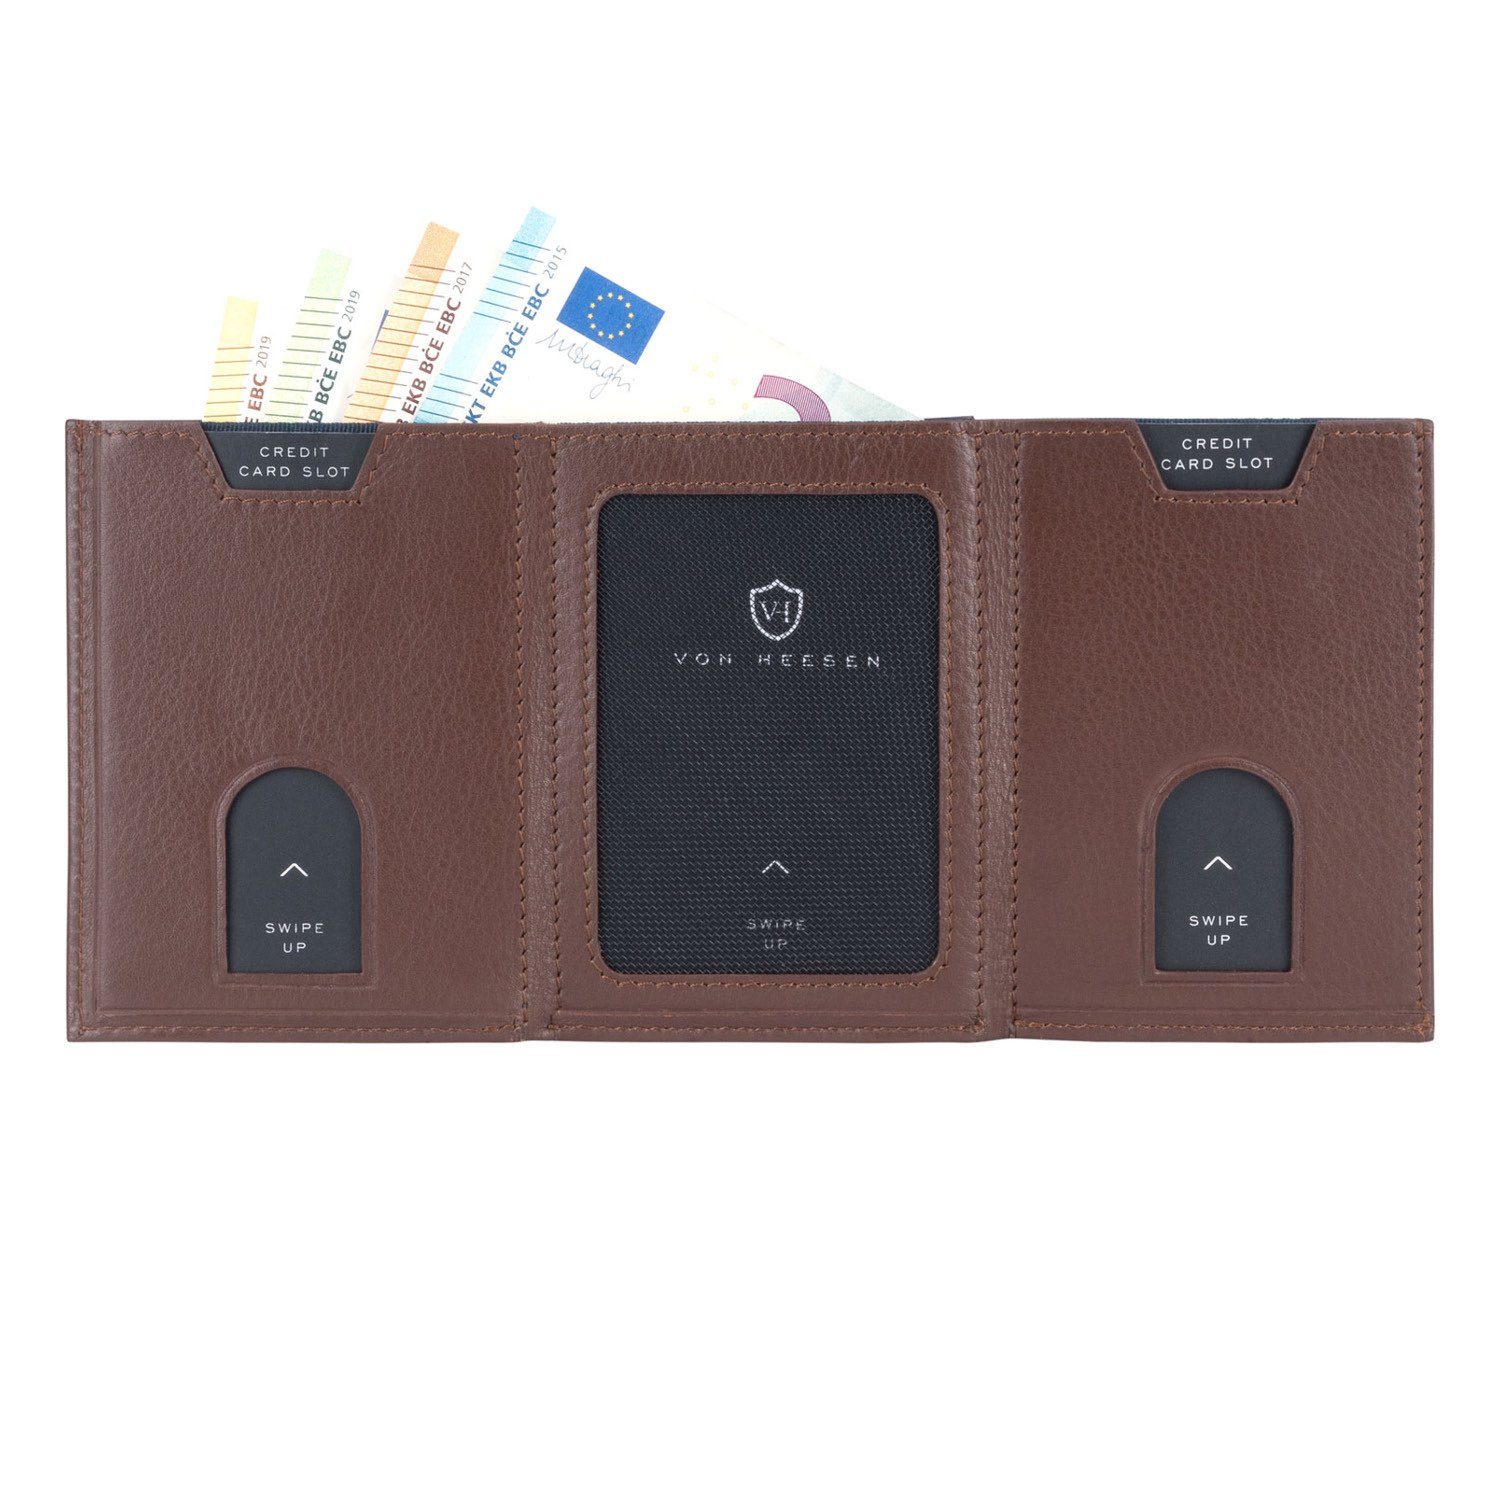 VON HEESEN Geldbörse Slim mit Geldbeutel inkl. Braun Portemonnaie RFID-Schutz Kartenfächer, Wallet Geschenkbox Whizz & 6 Wallet